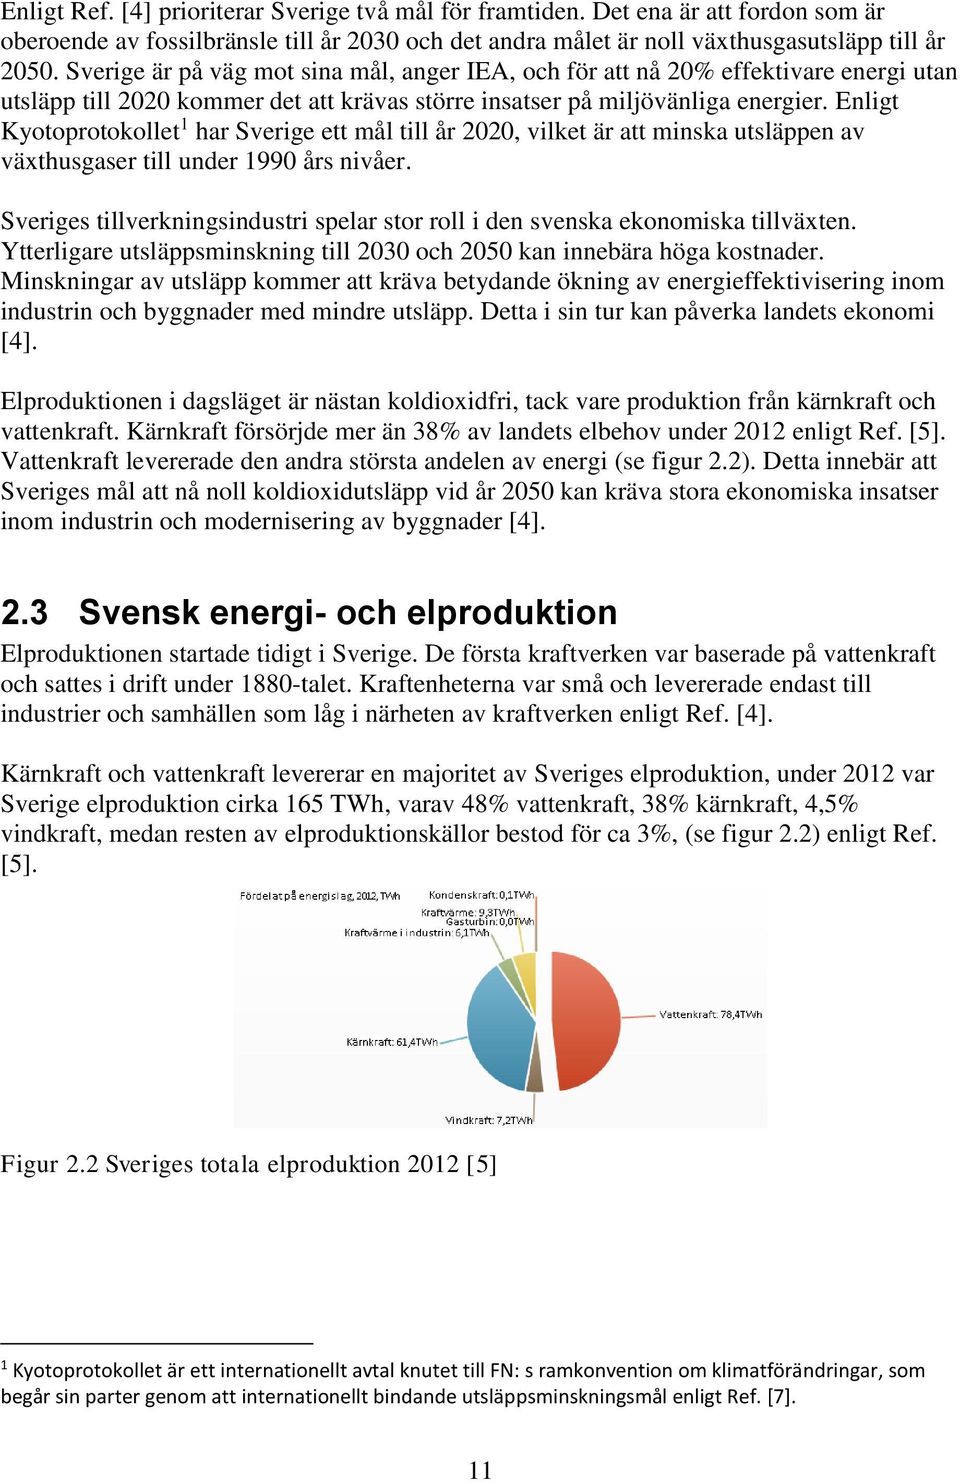 Enligt Kyotoprotokollet 1 har Sverige ett mål till år 2020, vilket är att minska utsläppen av växthusgaser till under 1990 års nivåer.